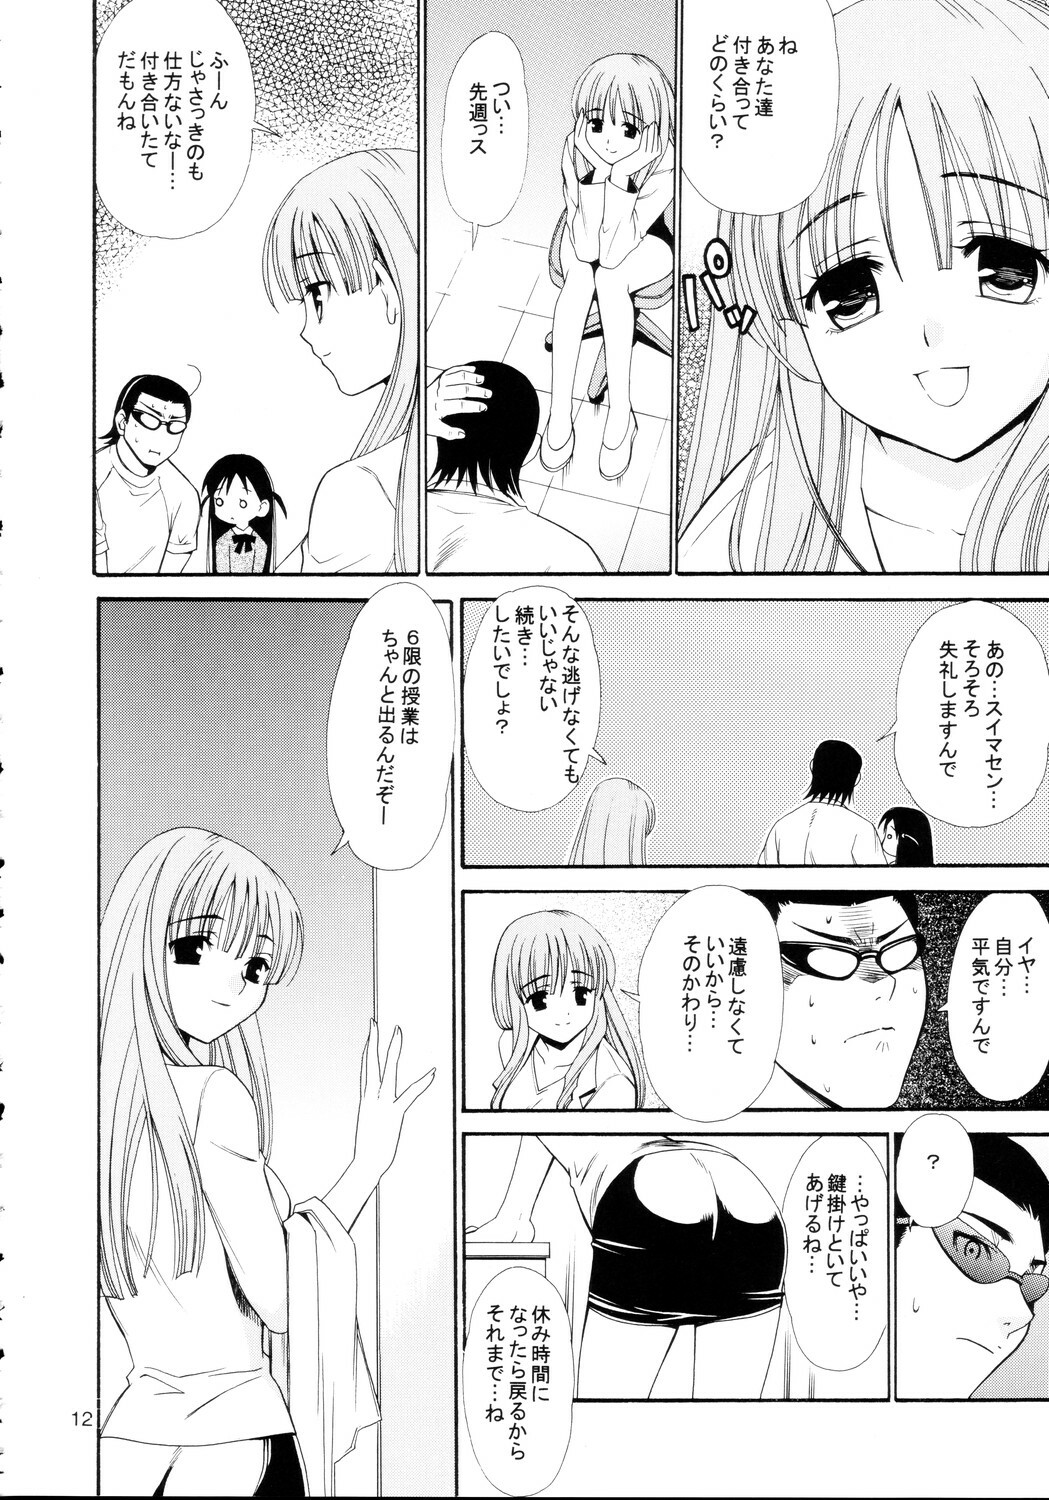 [Teruo Haruo] Hige Seito Harima! 4 (School Rumble) page 12 full